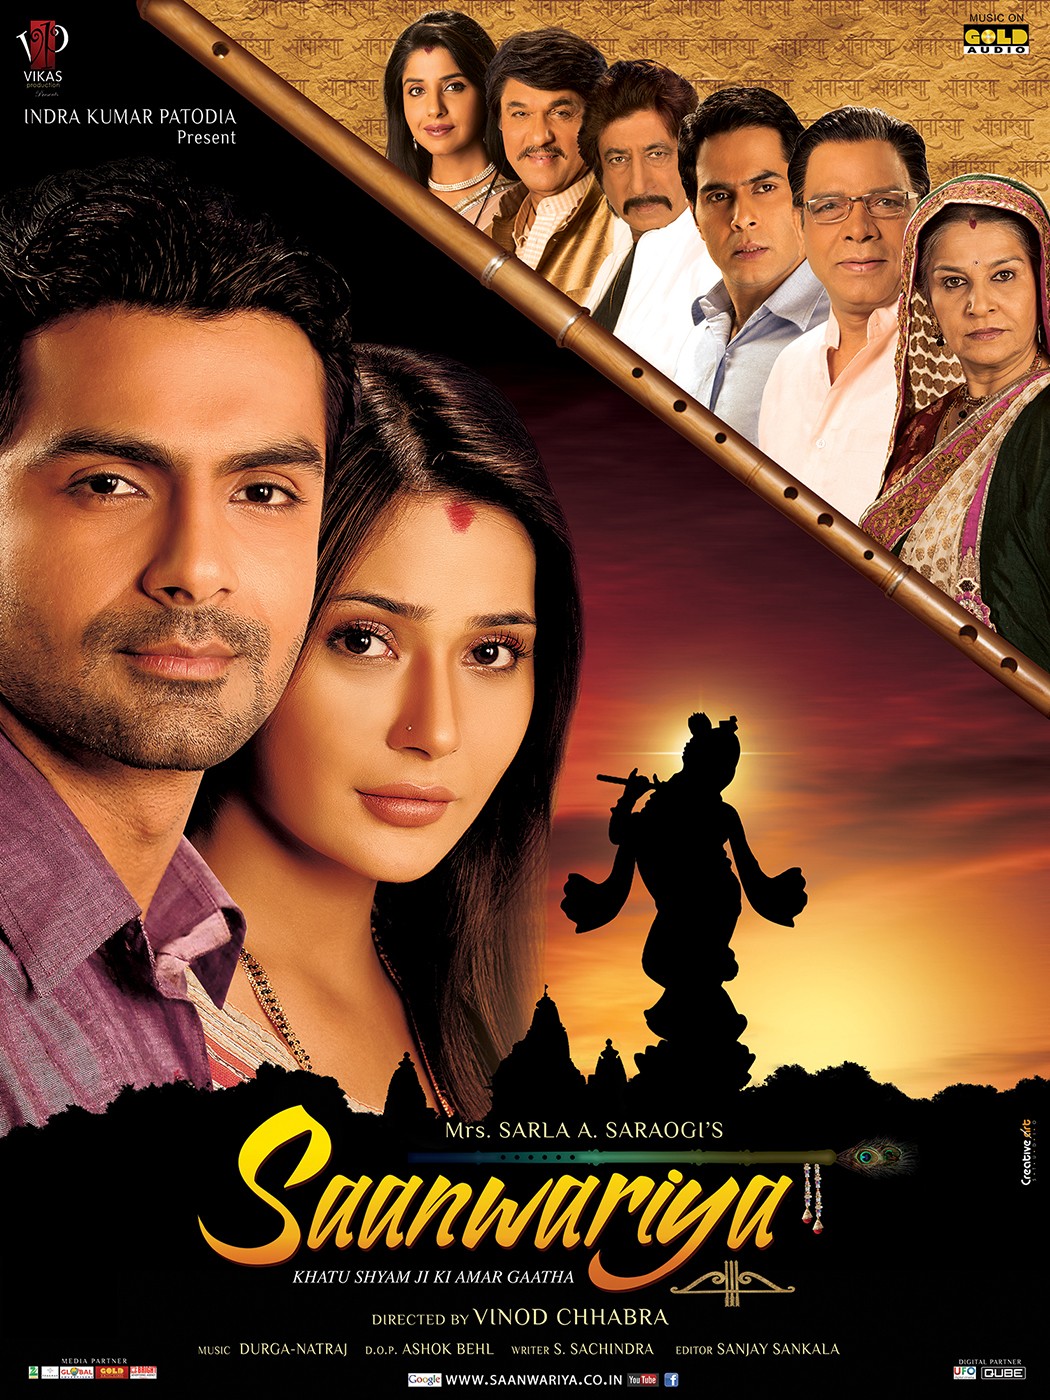 Extra Large Movie Poster Image for Saanwariya - Khatu Shyam Ji Ki Amar Gatha (#2 of 11)